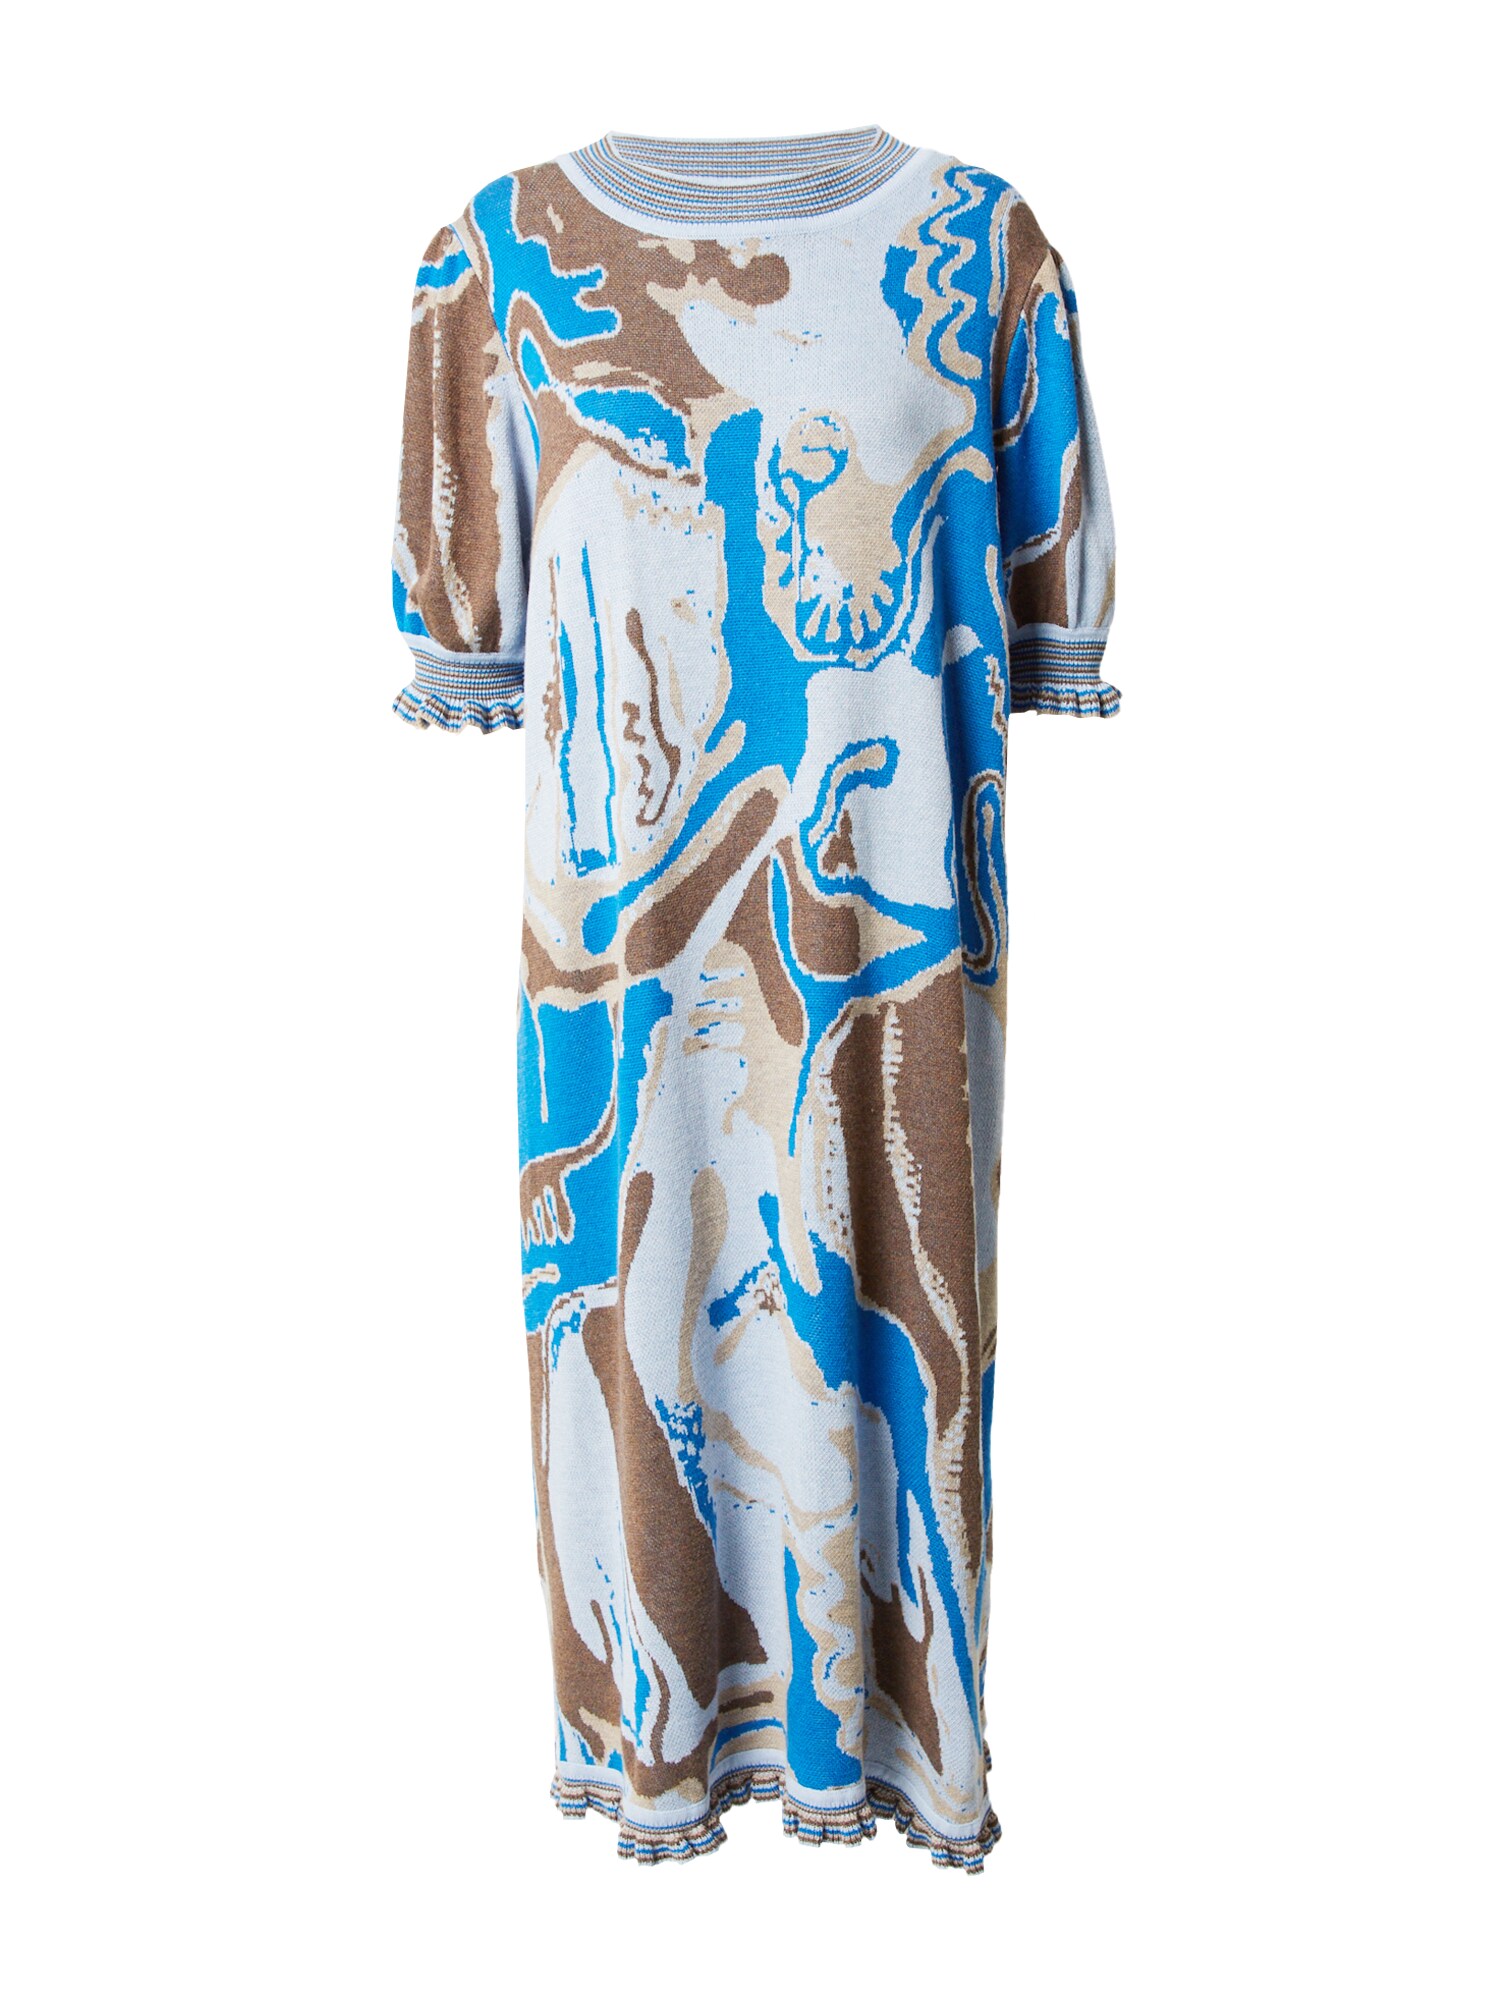 Pletené šaty Alda tmavobéžová modrá opálová hnedá Helmstedt